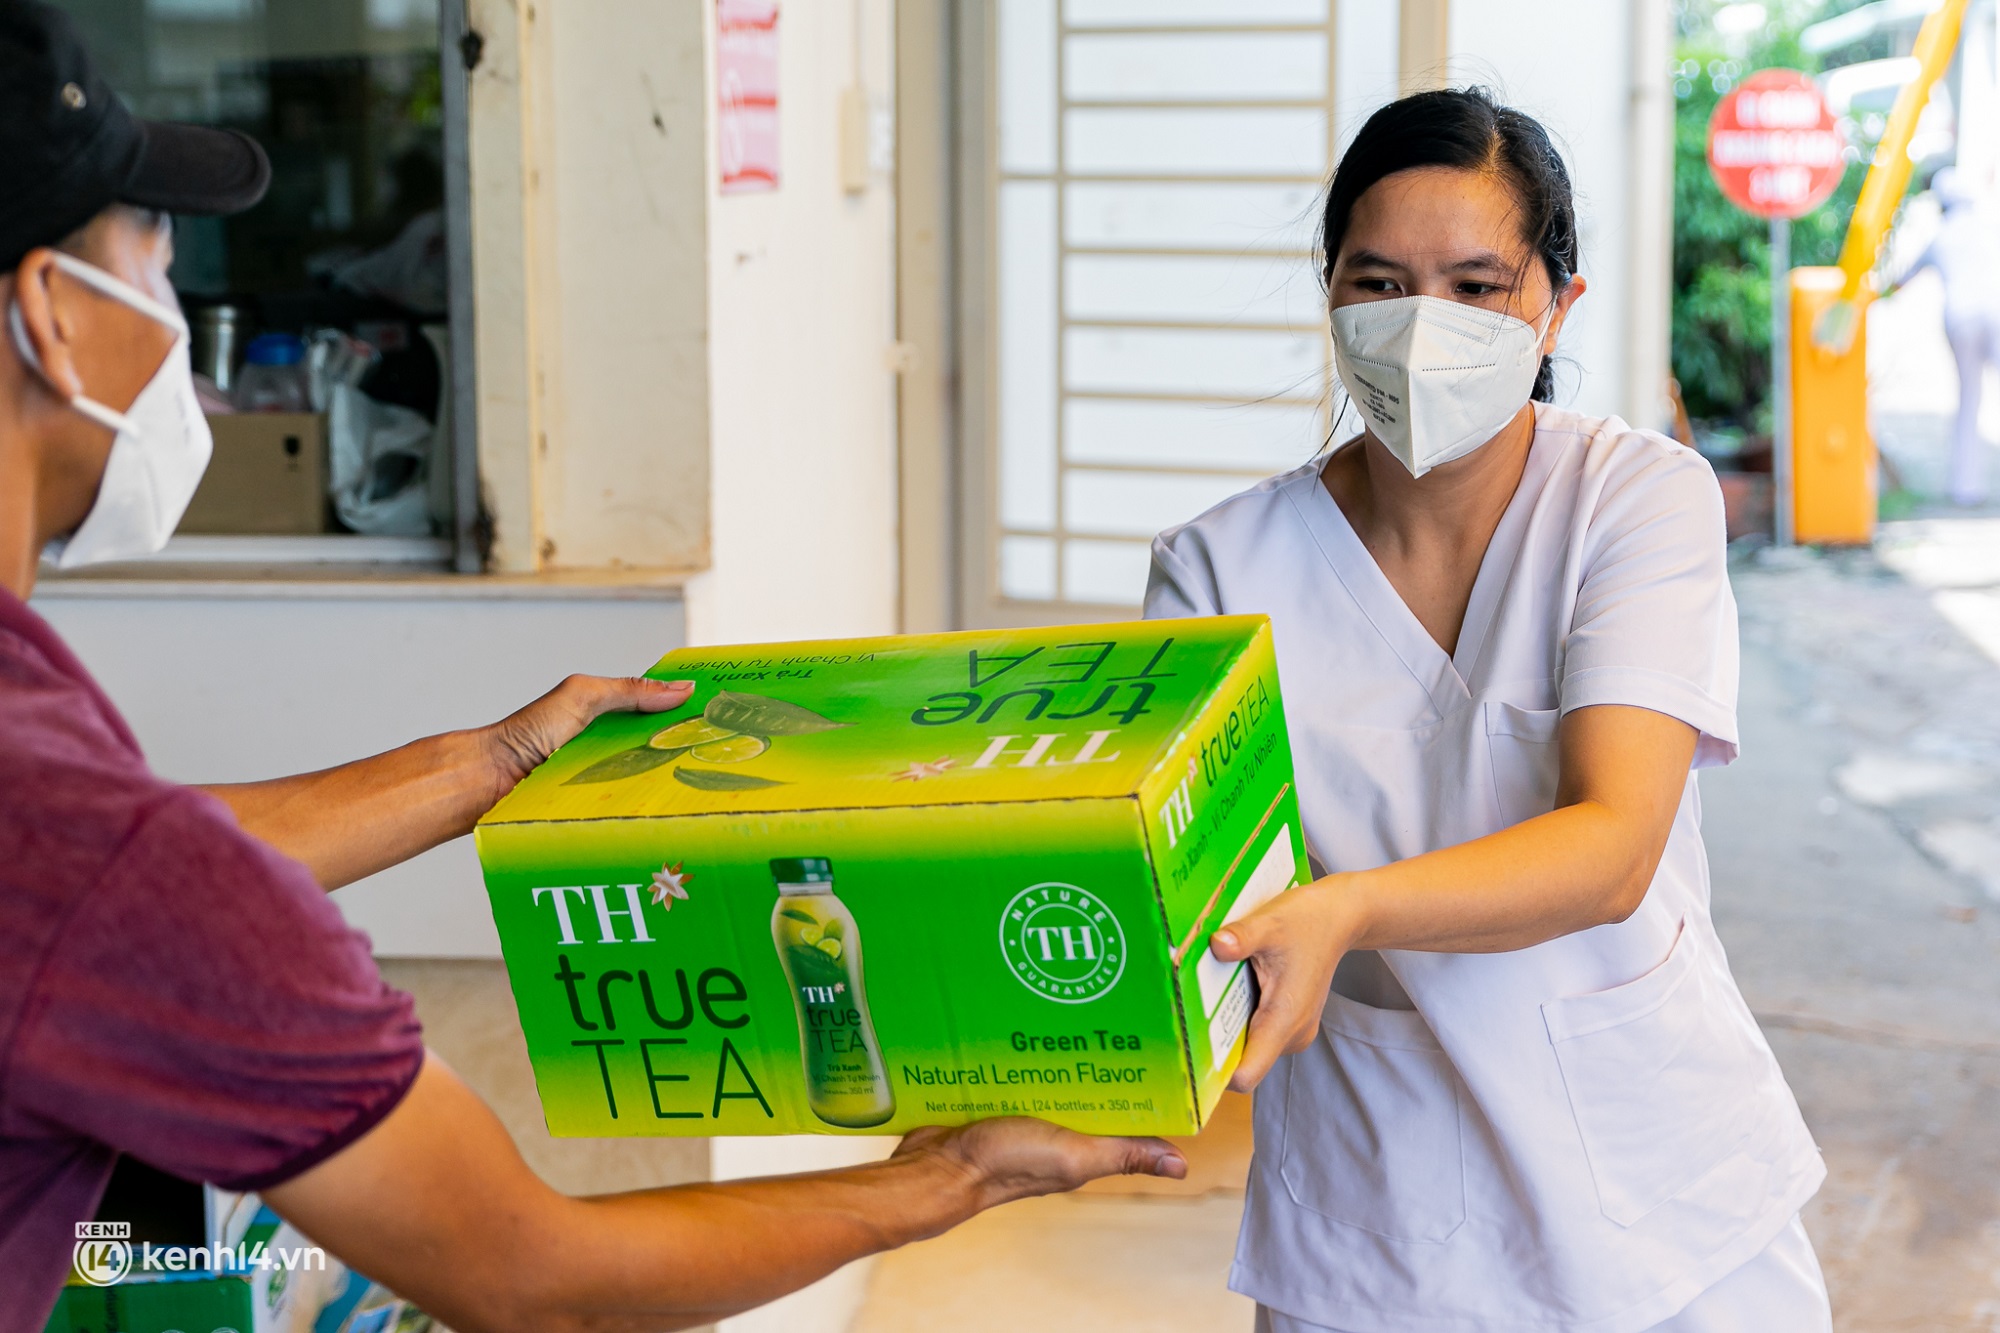 Hưởng ứng lời kêu gọi ủng hộ chống dịch, hơn 500.000 sản phẩm tốt cho sức khỏe của Tập đoàn TH tiếp tục được trao tặng tới TP HCM